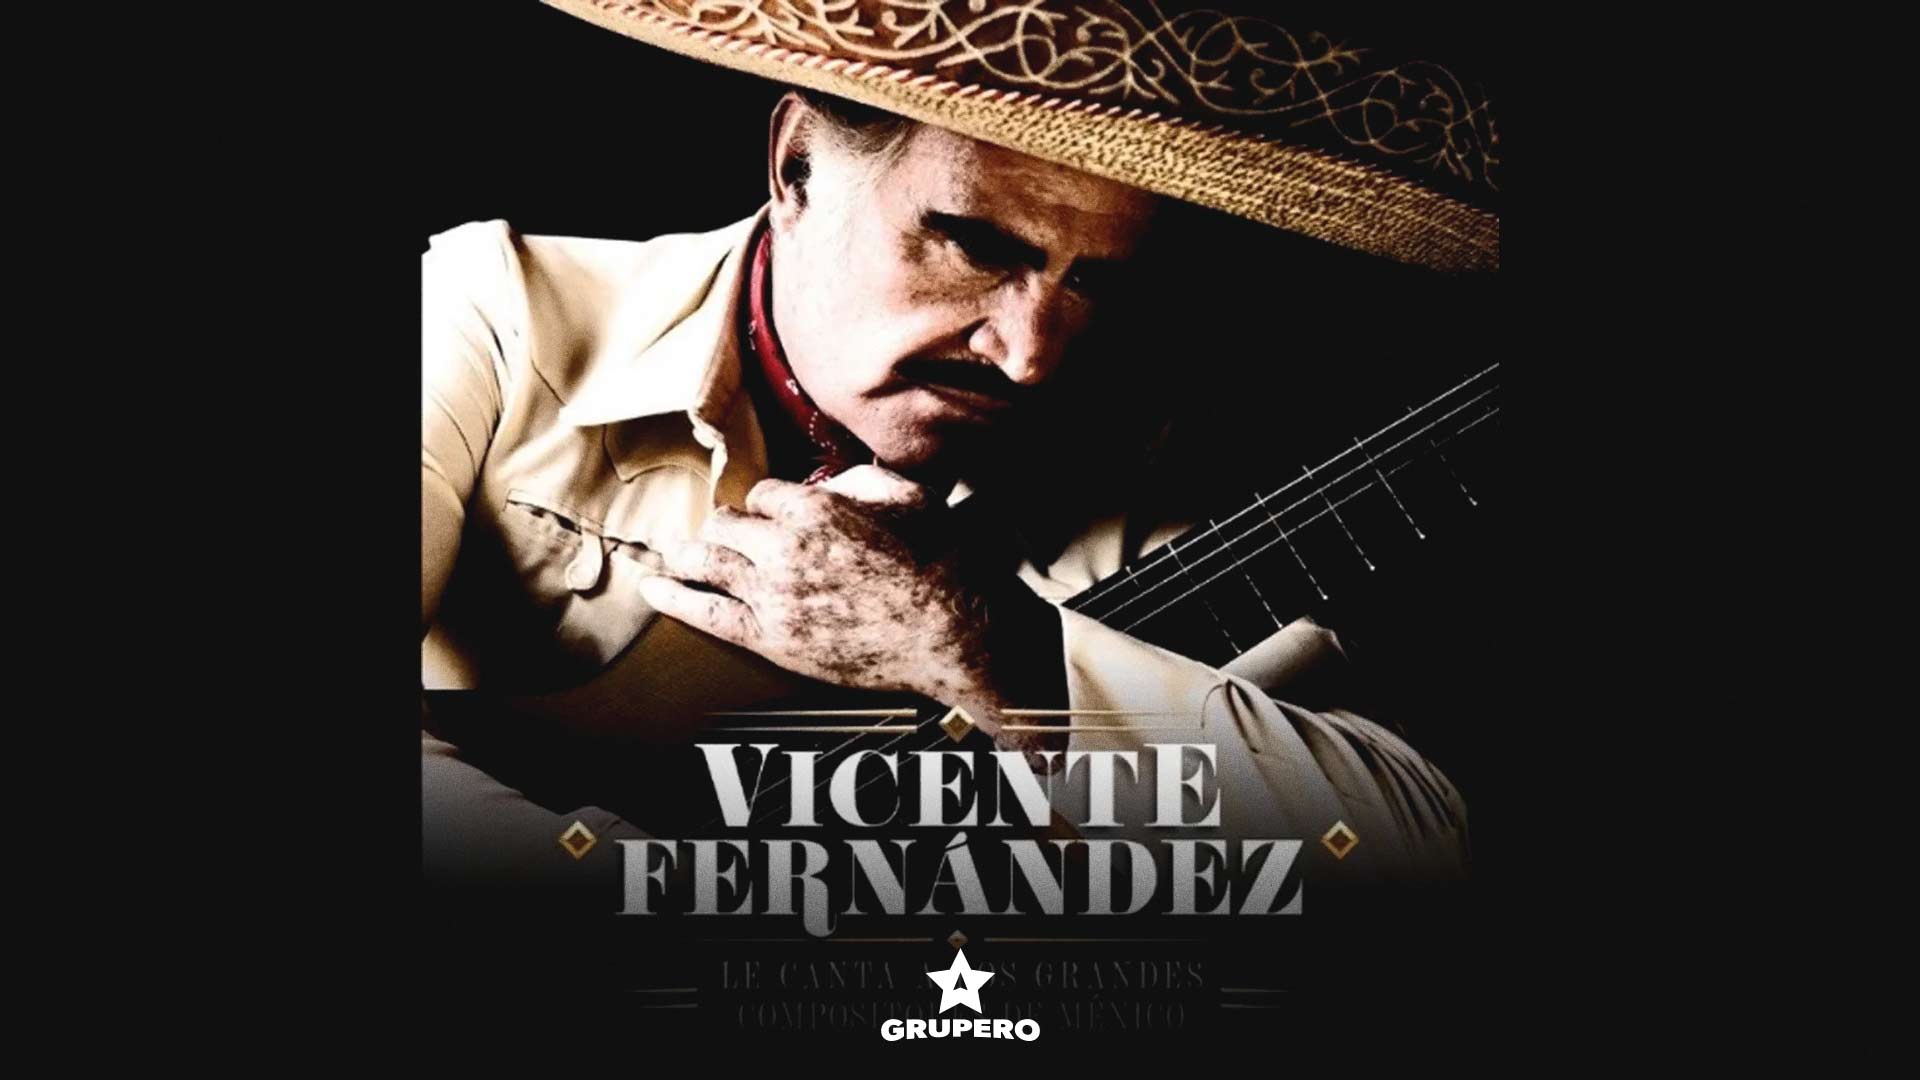 “VICENTE FERNÁNDEZ LE CANTA A LOS GRANDES COMPOSITORES DE MÉXICO” en su nuevo álbum